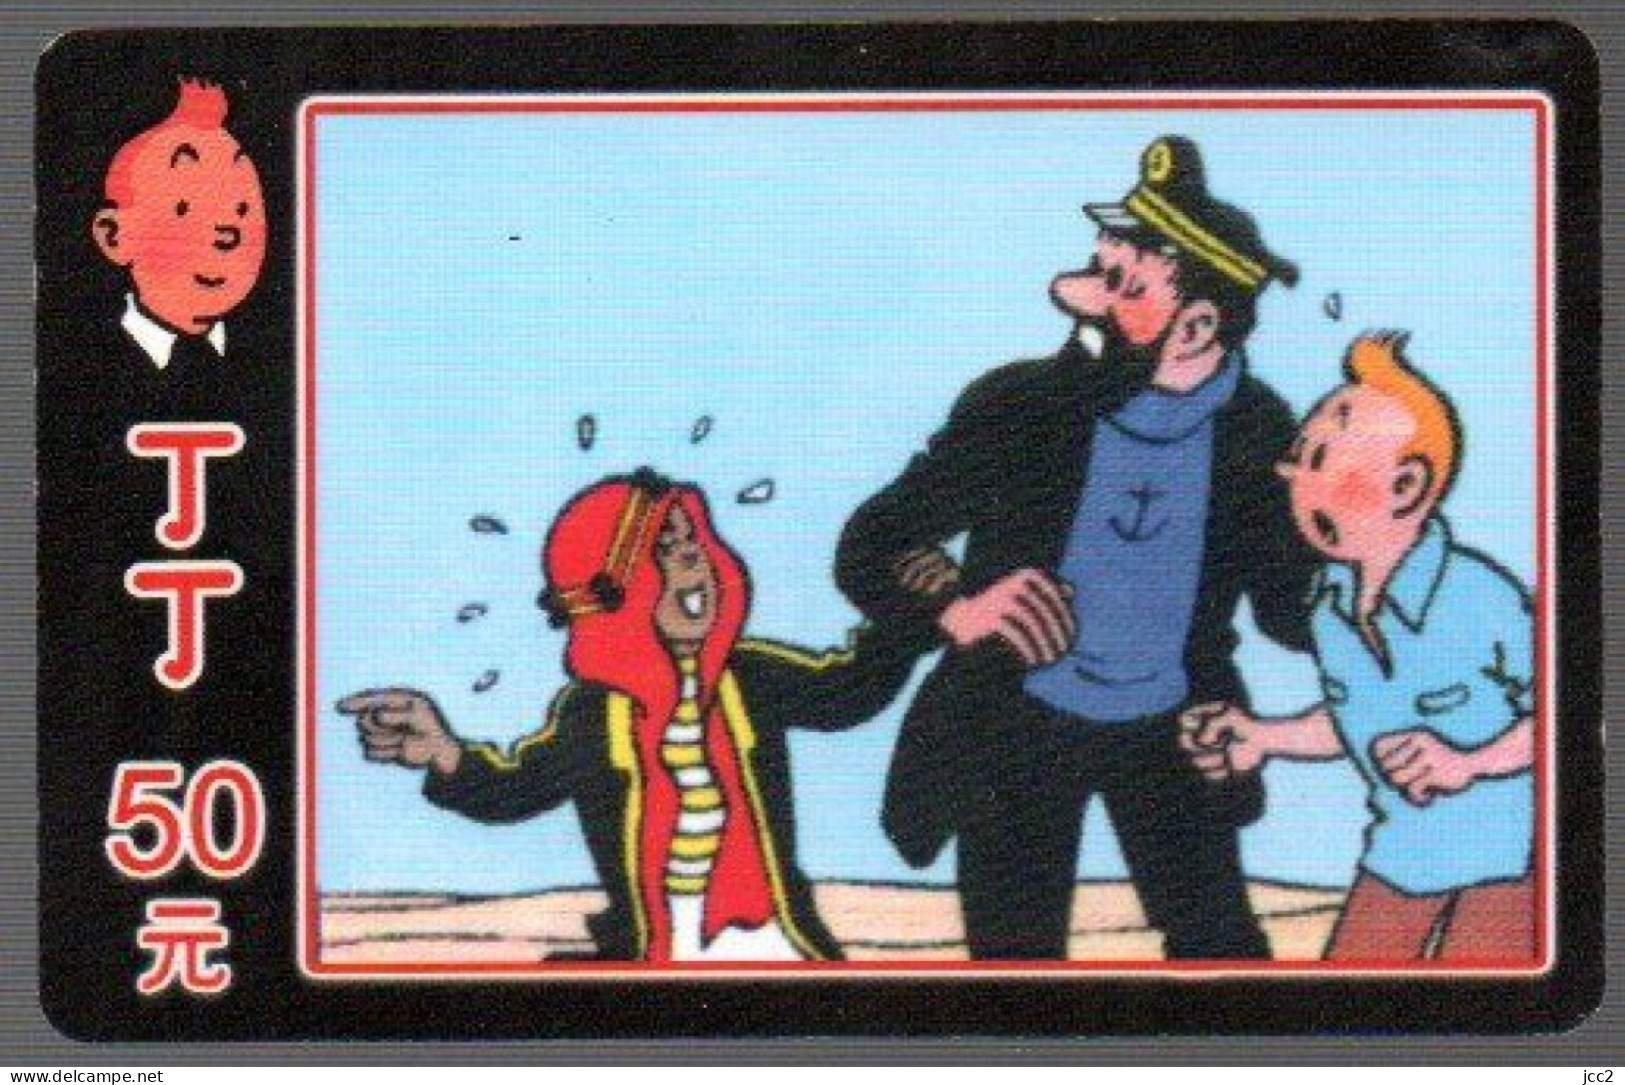 Tintin & Milou & Et Le Capitaine Hadock - Fumetti